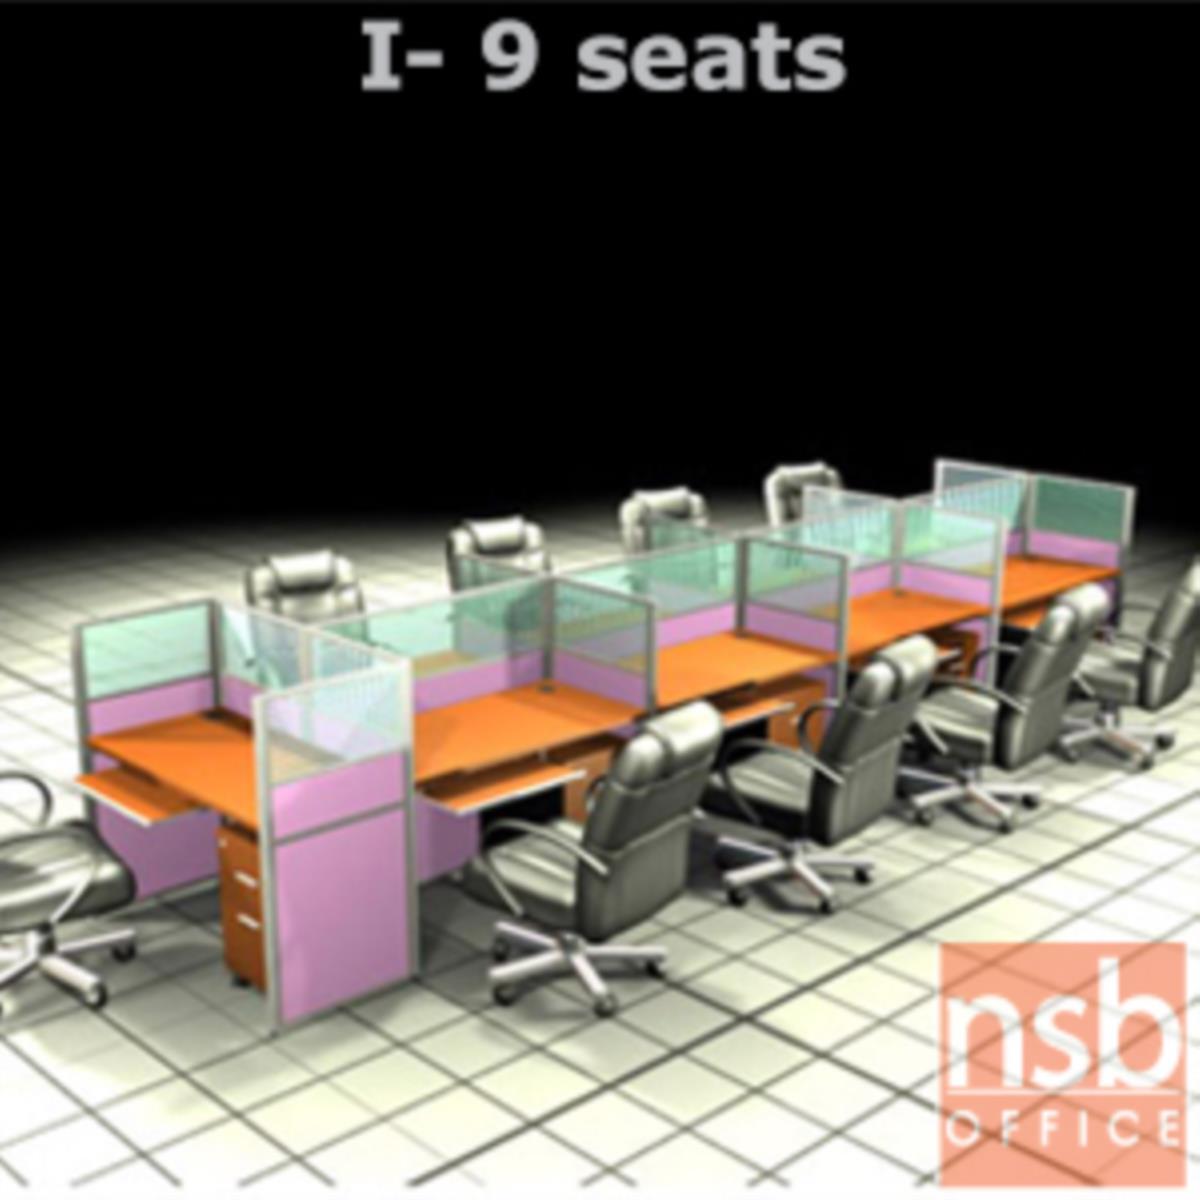 A04A096:ชุดโต๊ะทำงานกลุ่ม 9 ที่นั่ง  ขนาดรวม 550W*126D cm. พร้อมพาร์ทิชั่นครึ่งกระจกขัดลาย